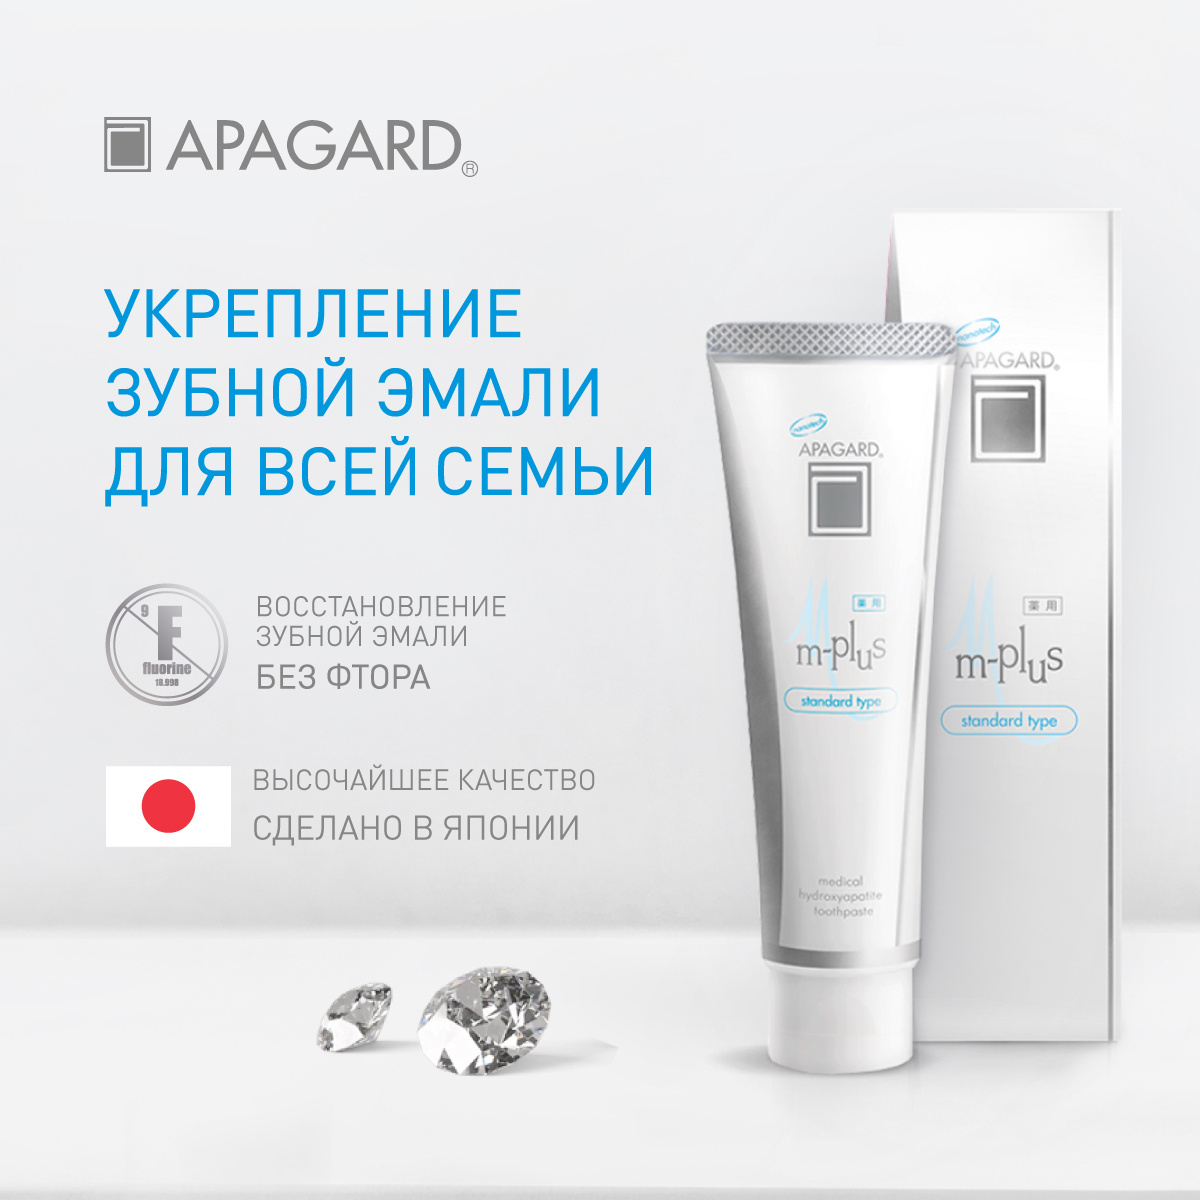 Дополнительная скидка 15% на японские зубные пасты и щётки Apagard